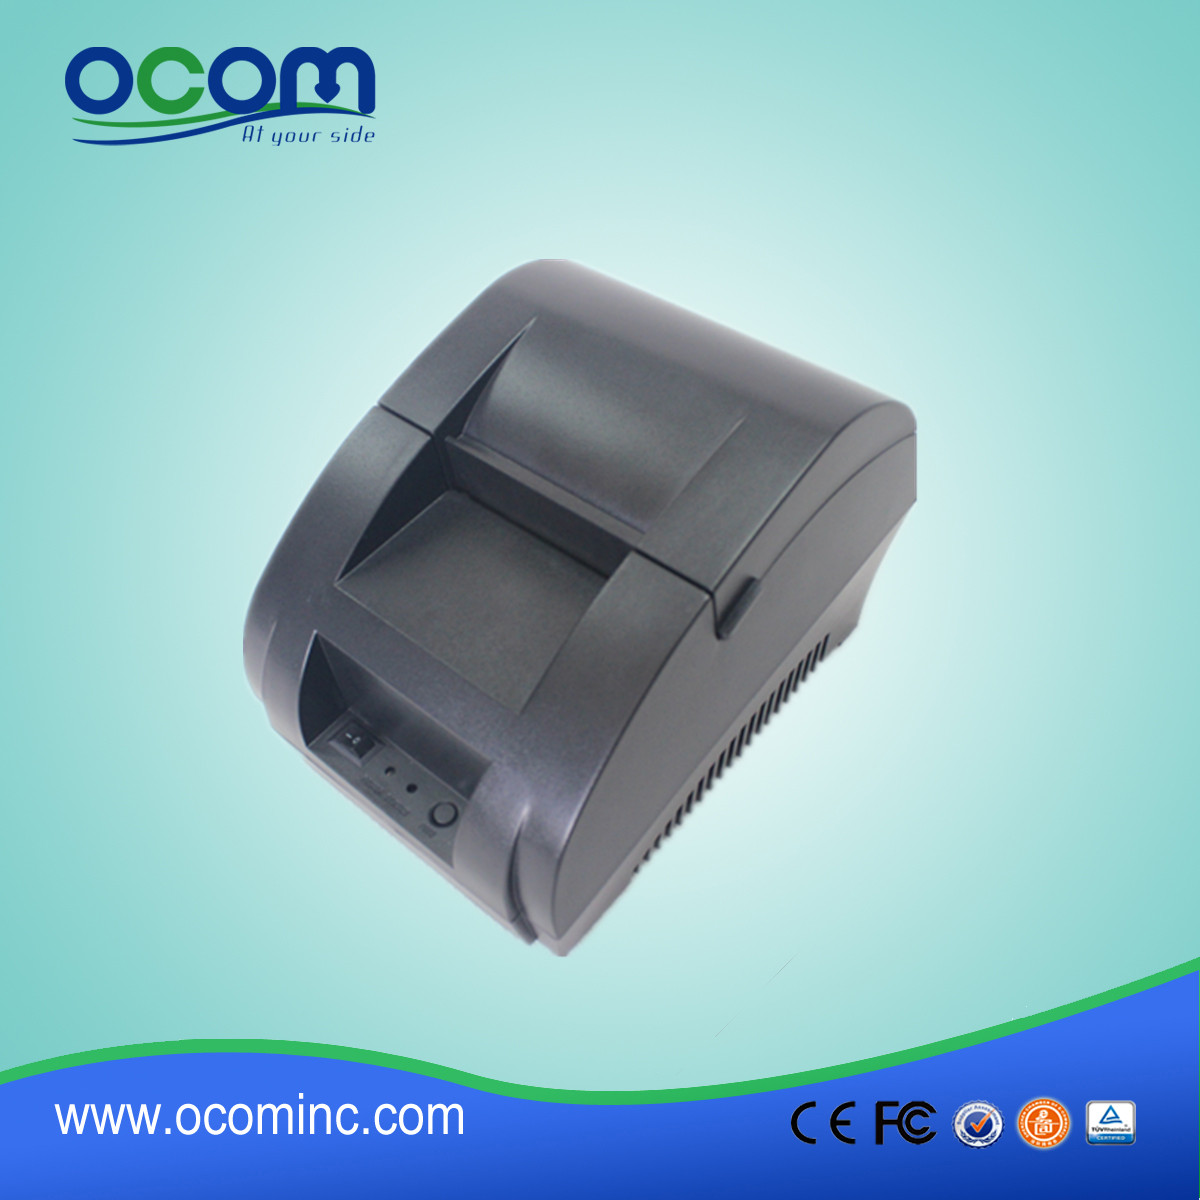 Imprimante de reçus thermiques OCPP-58Z 58mm avec adaptateur secteur intégré